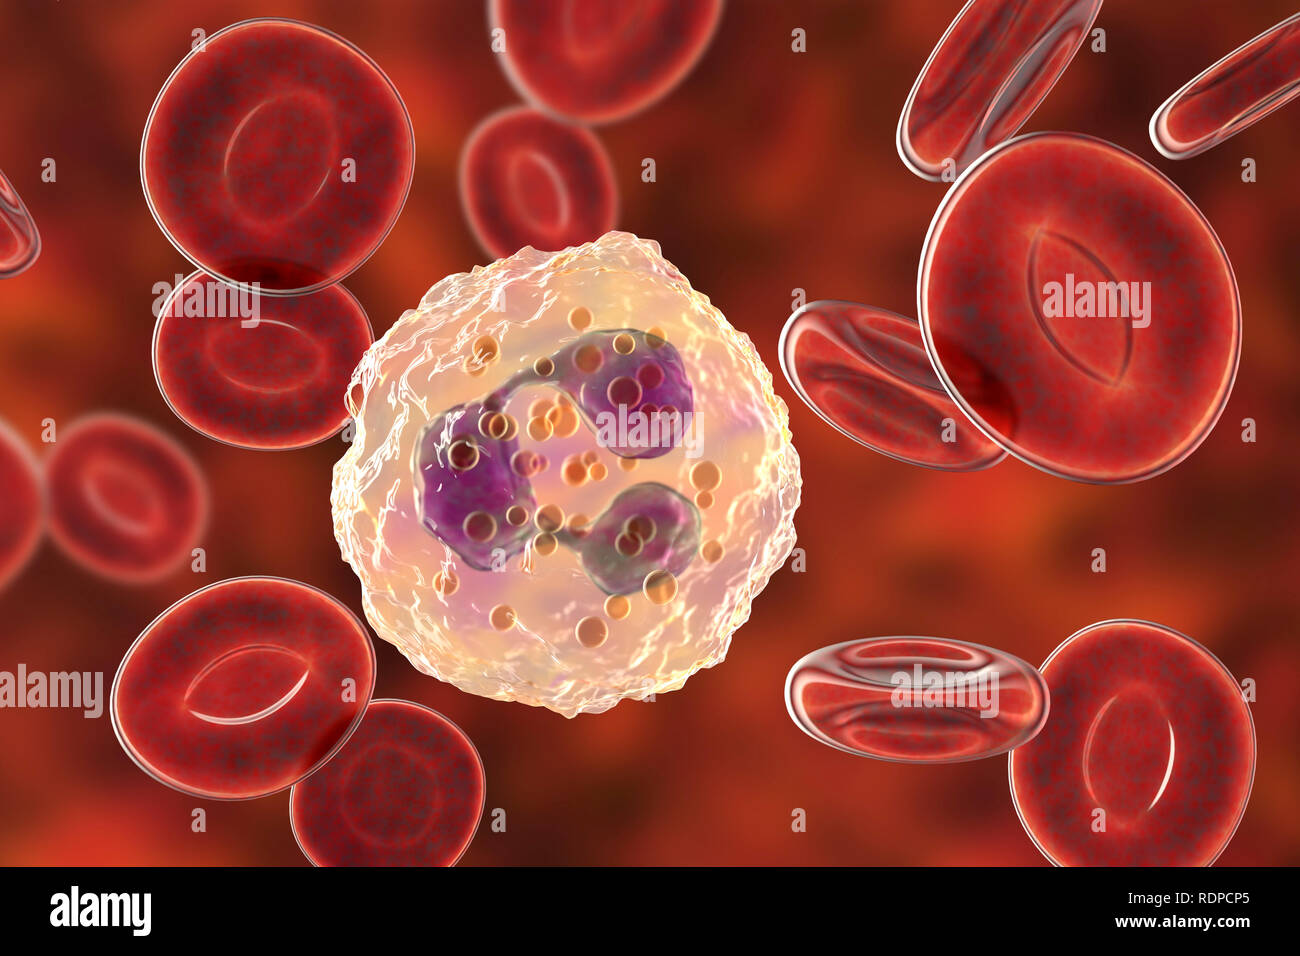 I neutrofili di globuli bianchi e cellule di sangue rosso, illustrazione del computer. I neutrofili sono i più abbondanti di globuli bianchi e sono parte del sistema immunitario del corpo. Foto Stock